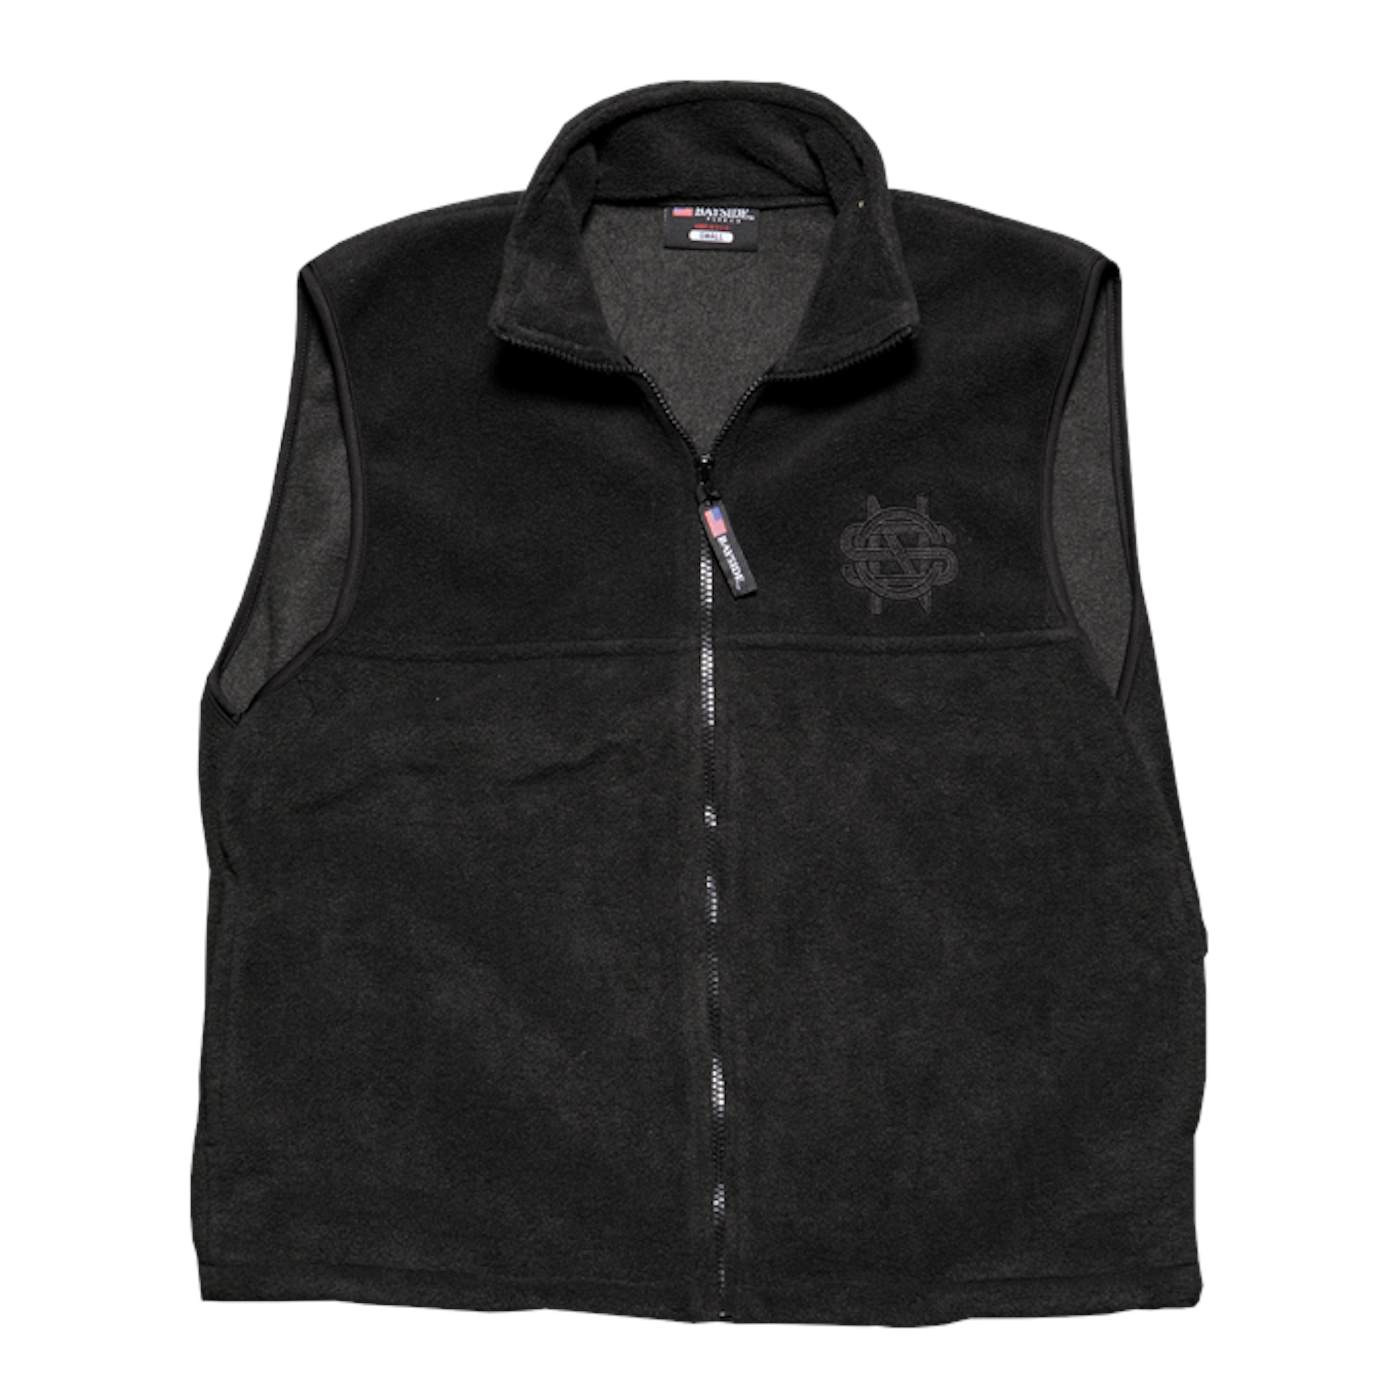 Crosby, Stills & Nash Black Fleece Vest-Initials Logo